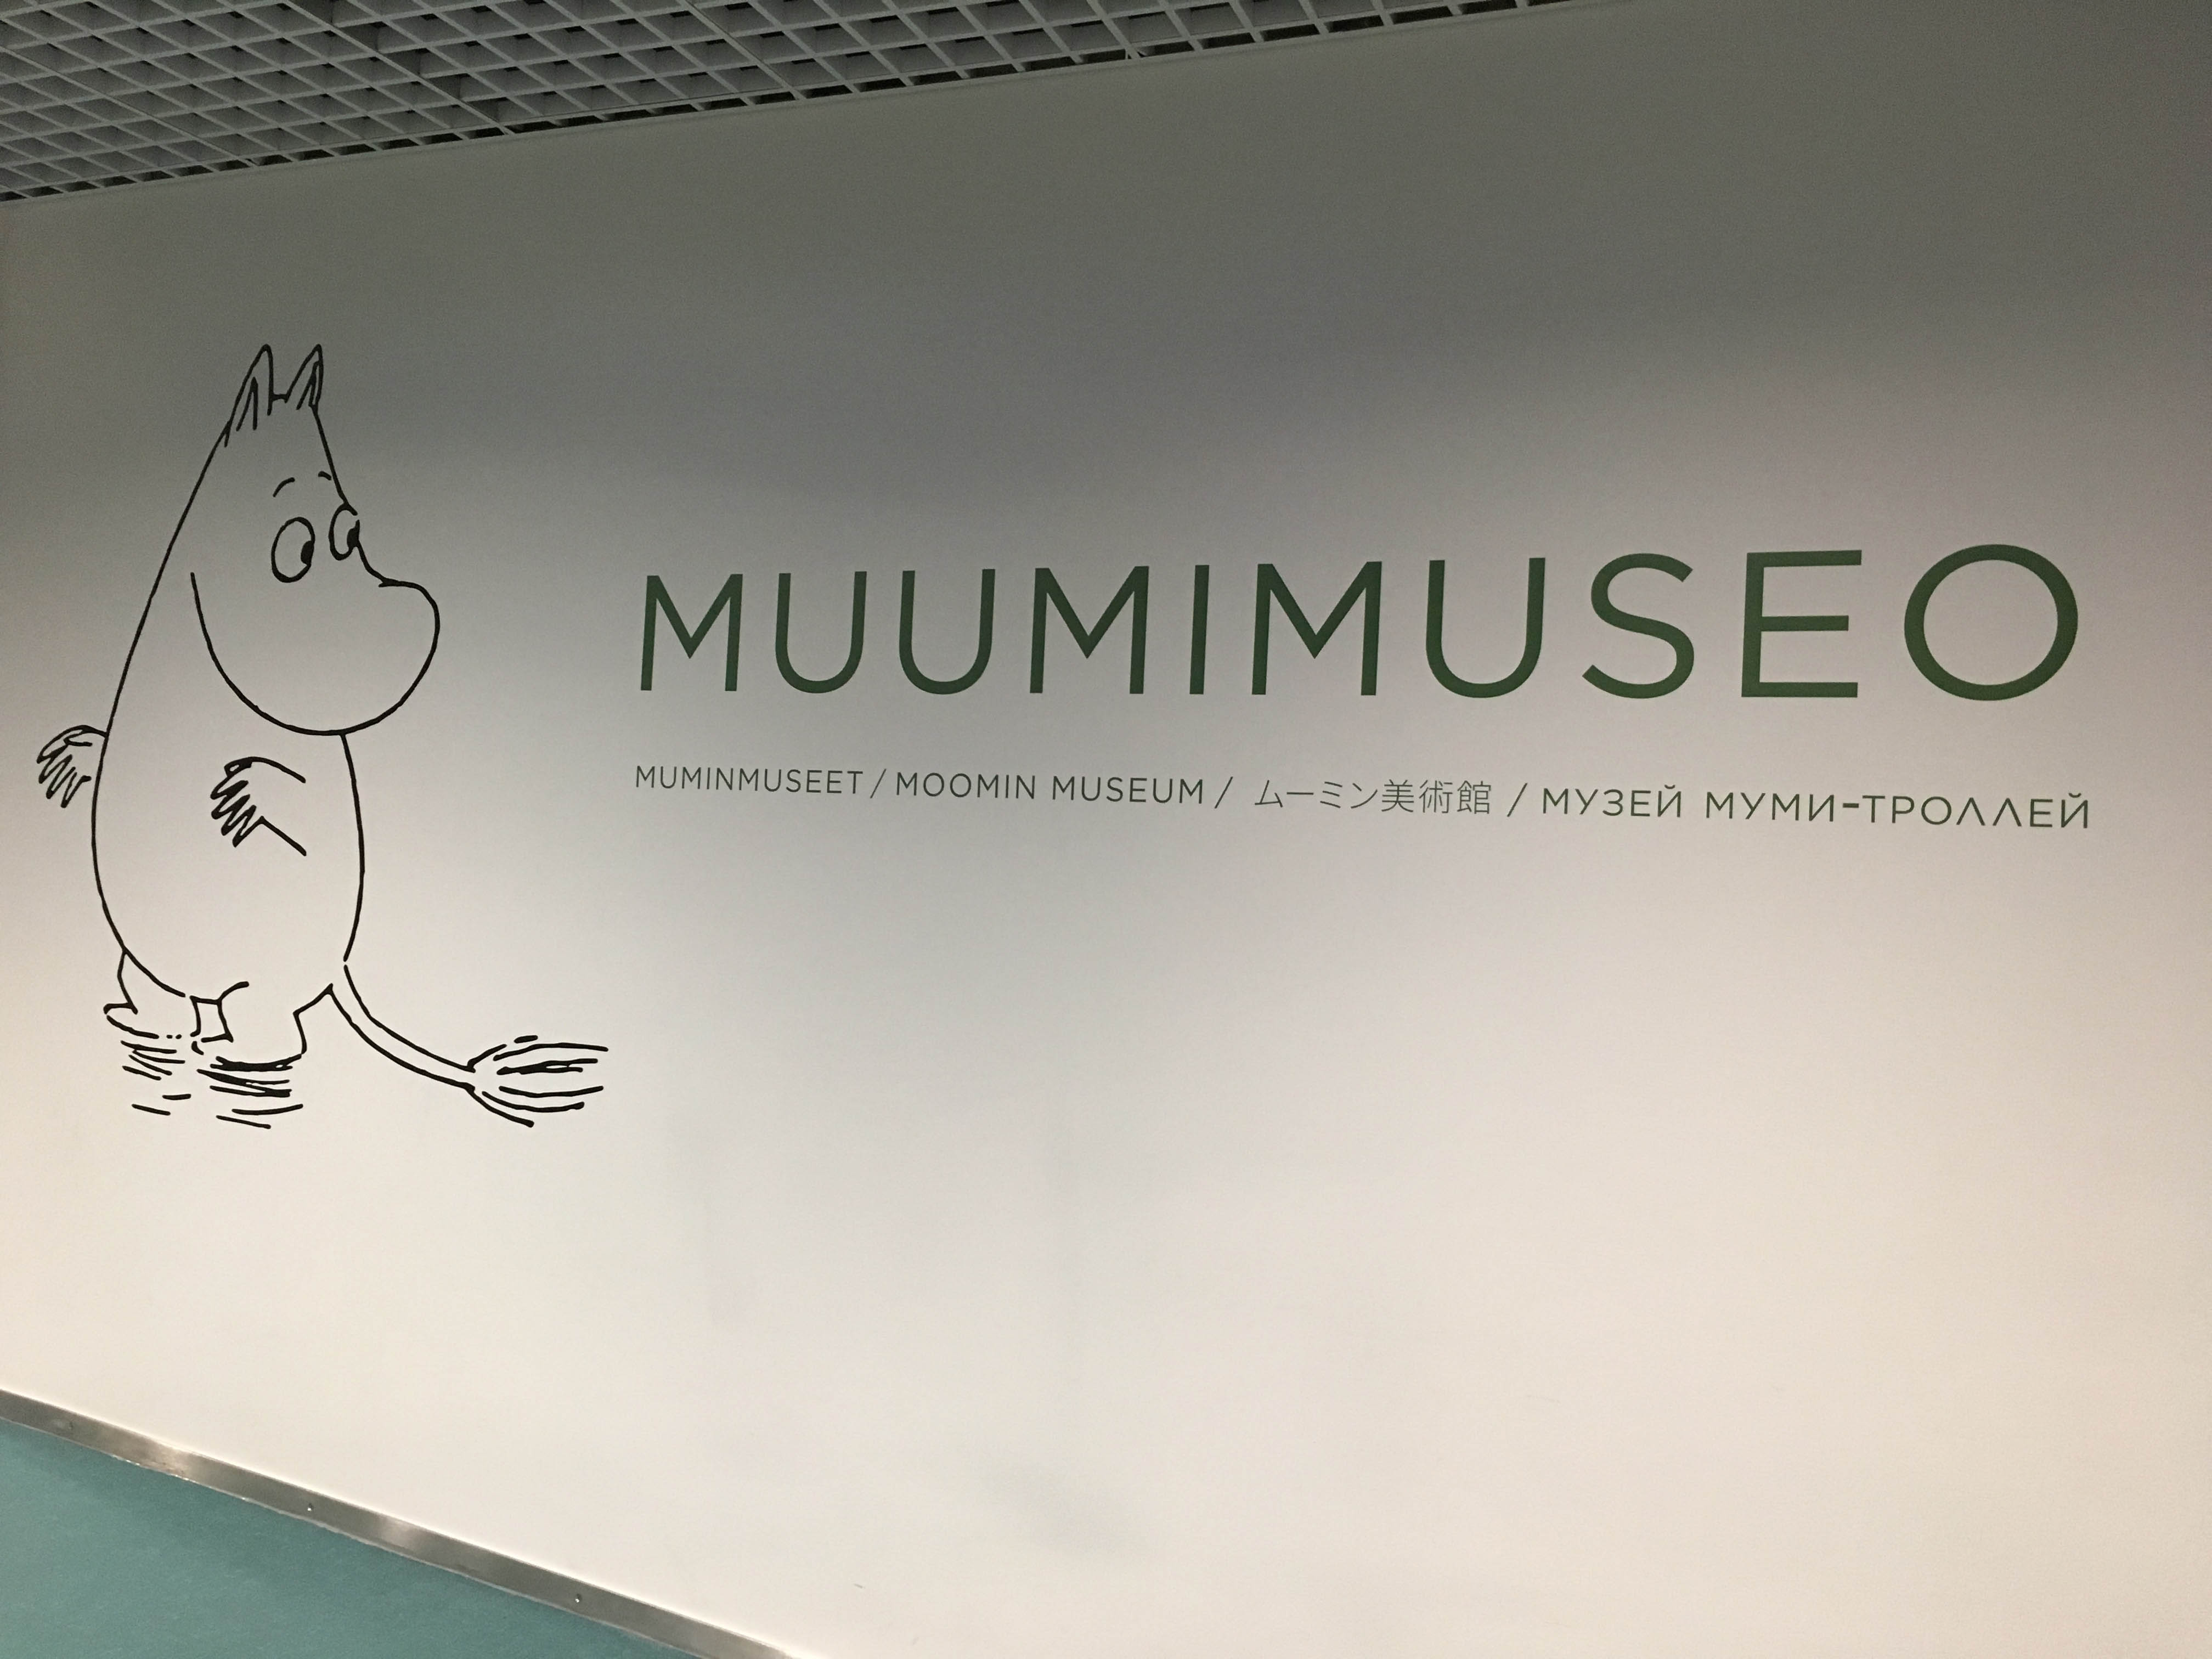 ムーミン美術館 ヘルシンキのおすすめ観光地 名所 現地を知り尽くしたガイドによる口コミ情報 トラベルコ